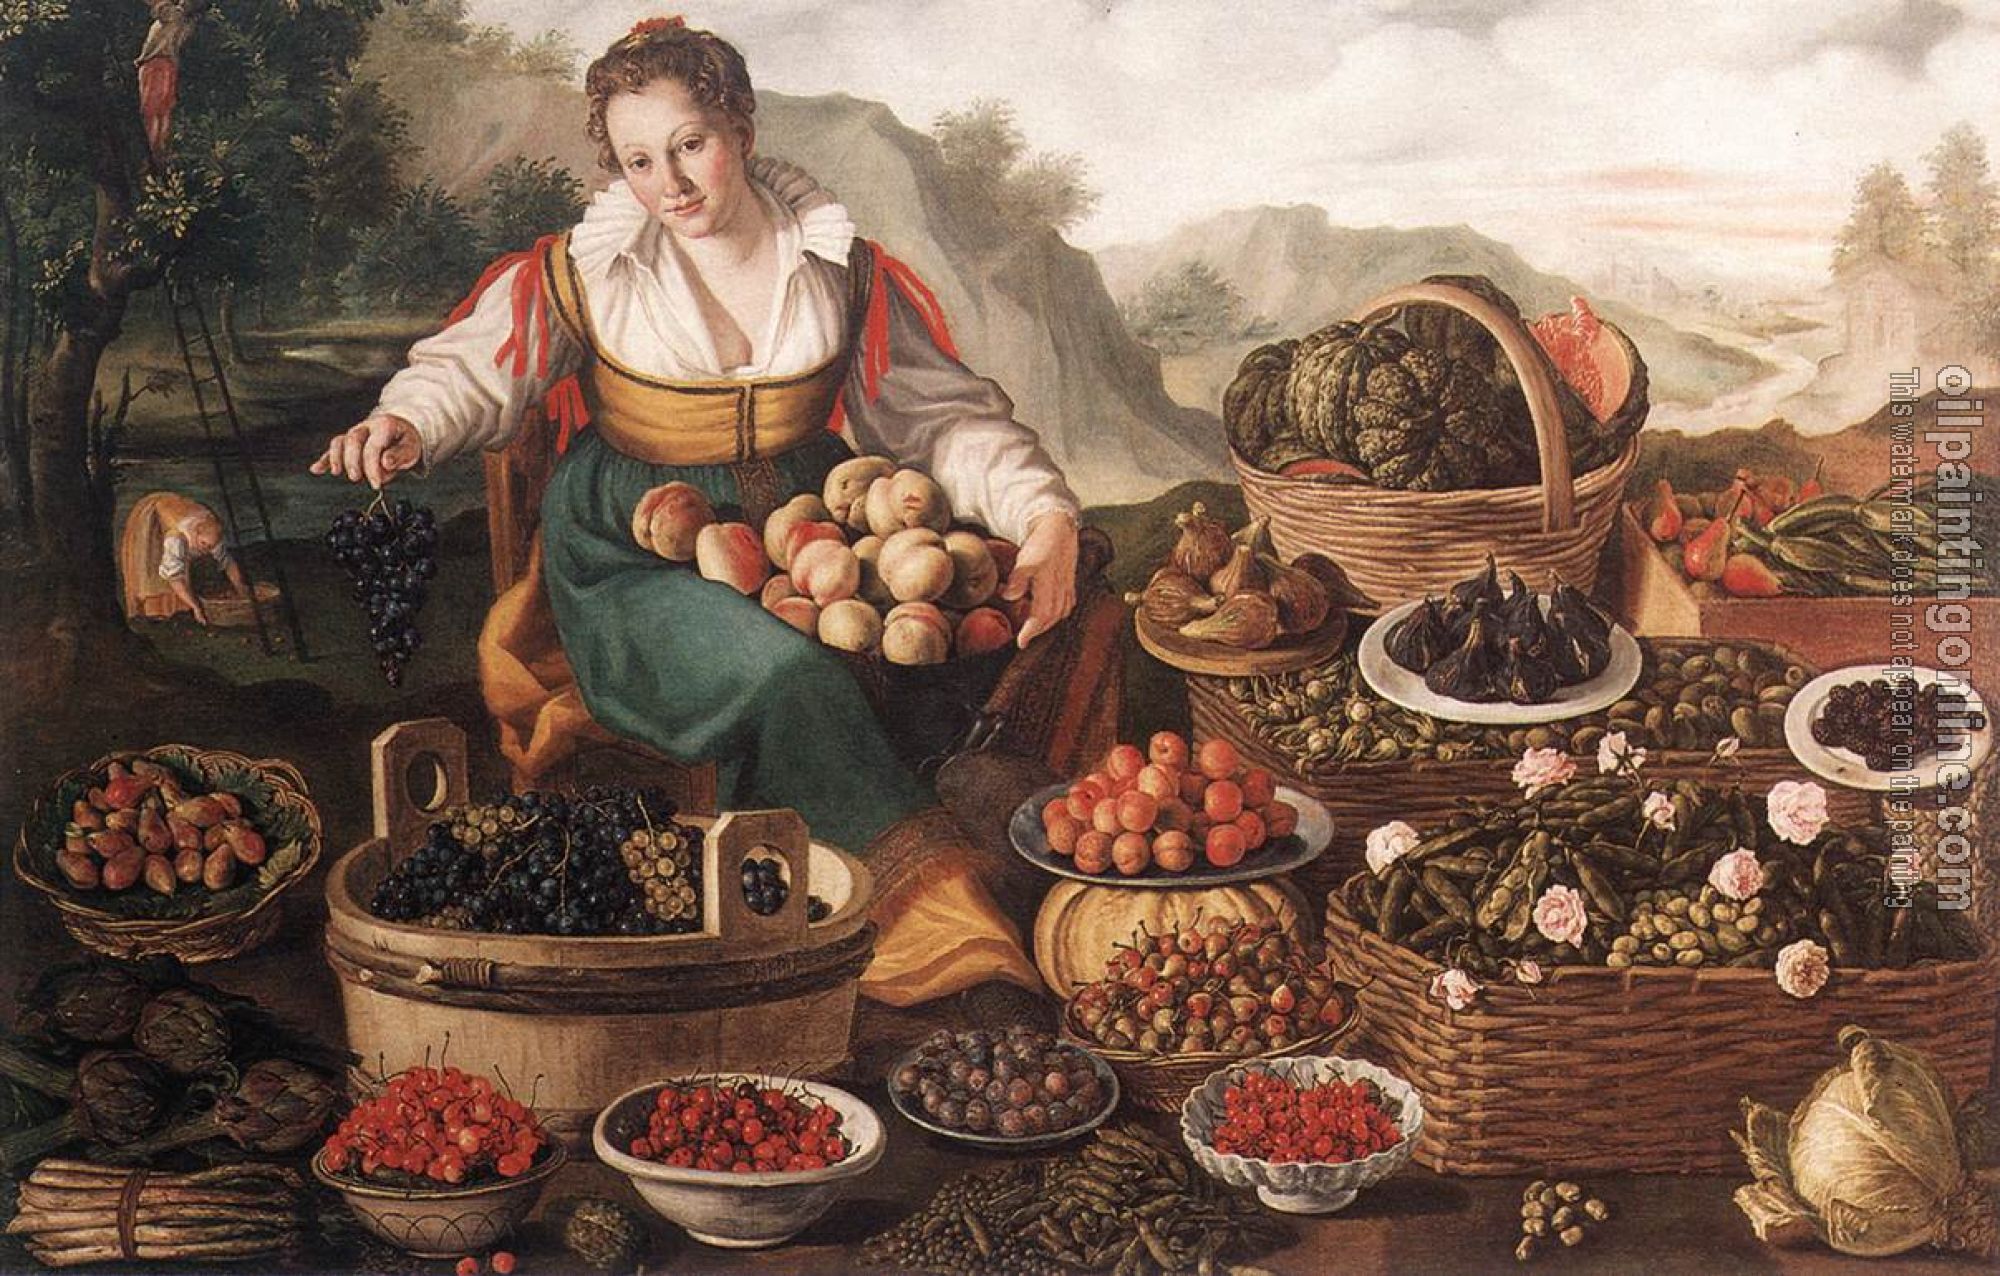 Campi, Vincenzo - The Fruit Seller